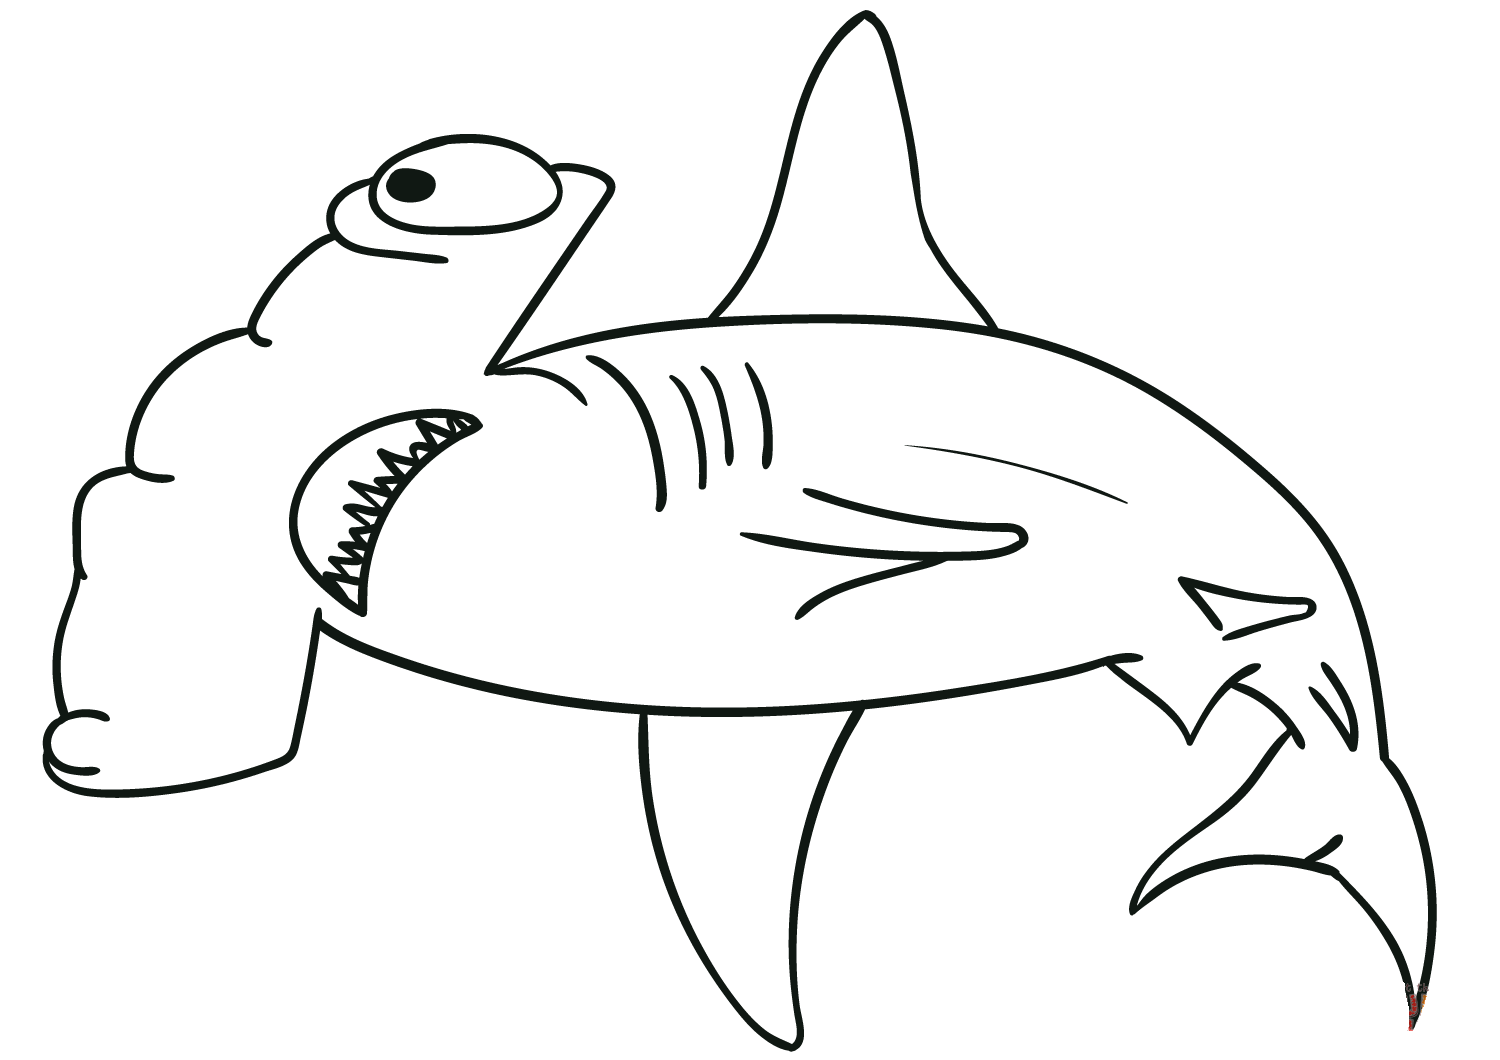 双髻鲨具有类似鲨鱼的锤子形状